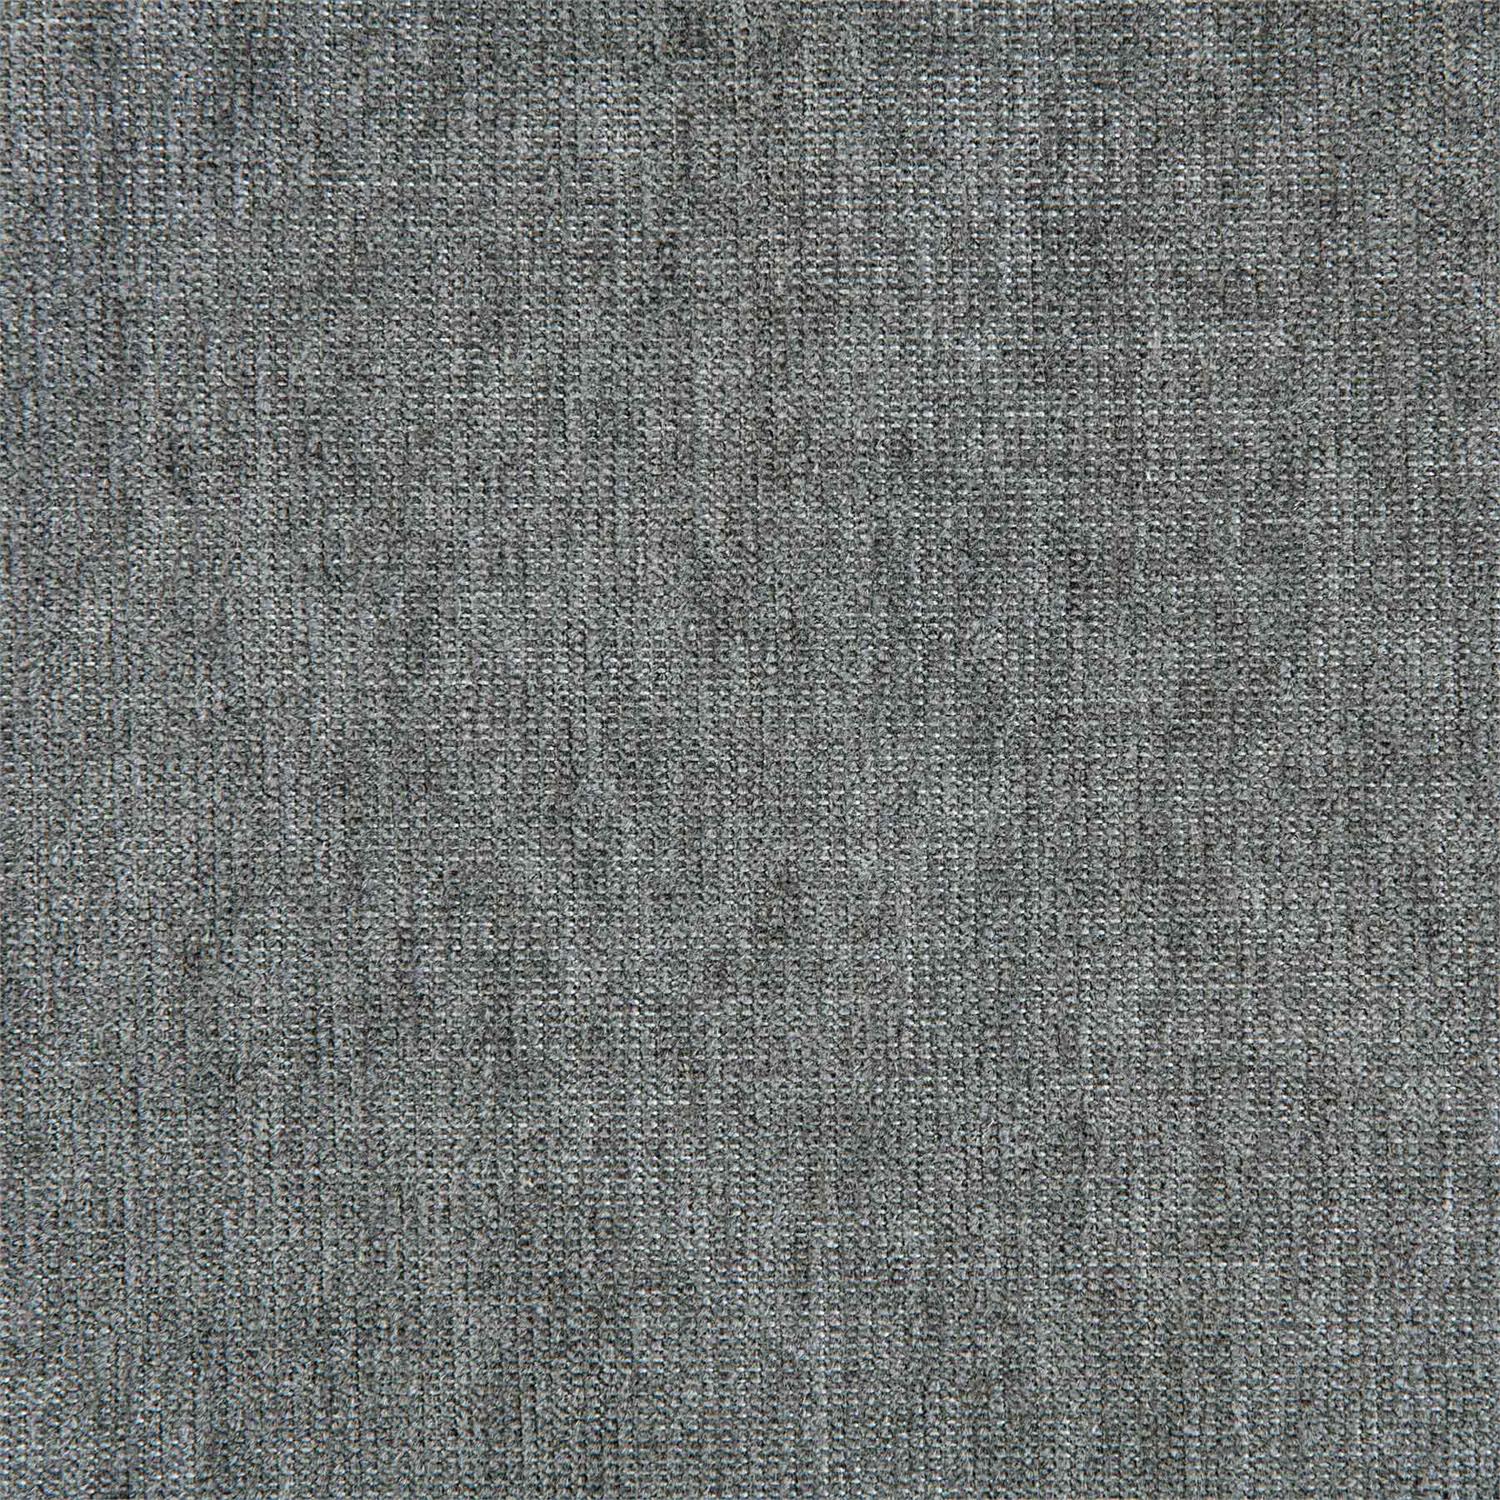 6002-010 Fabric